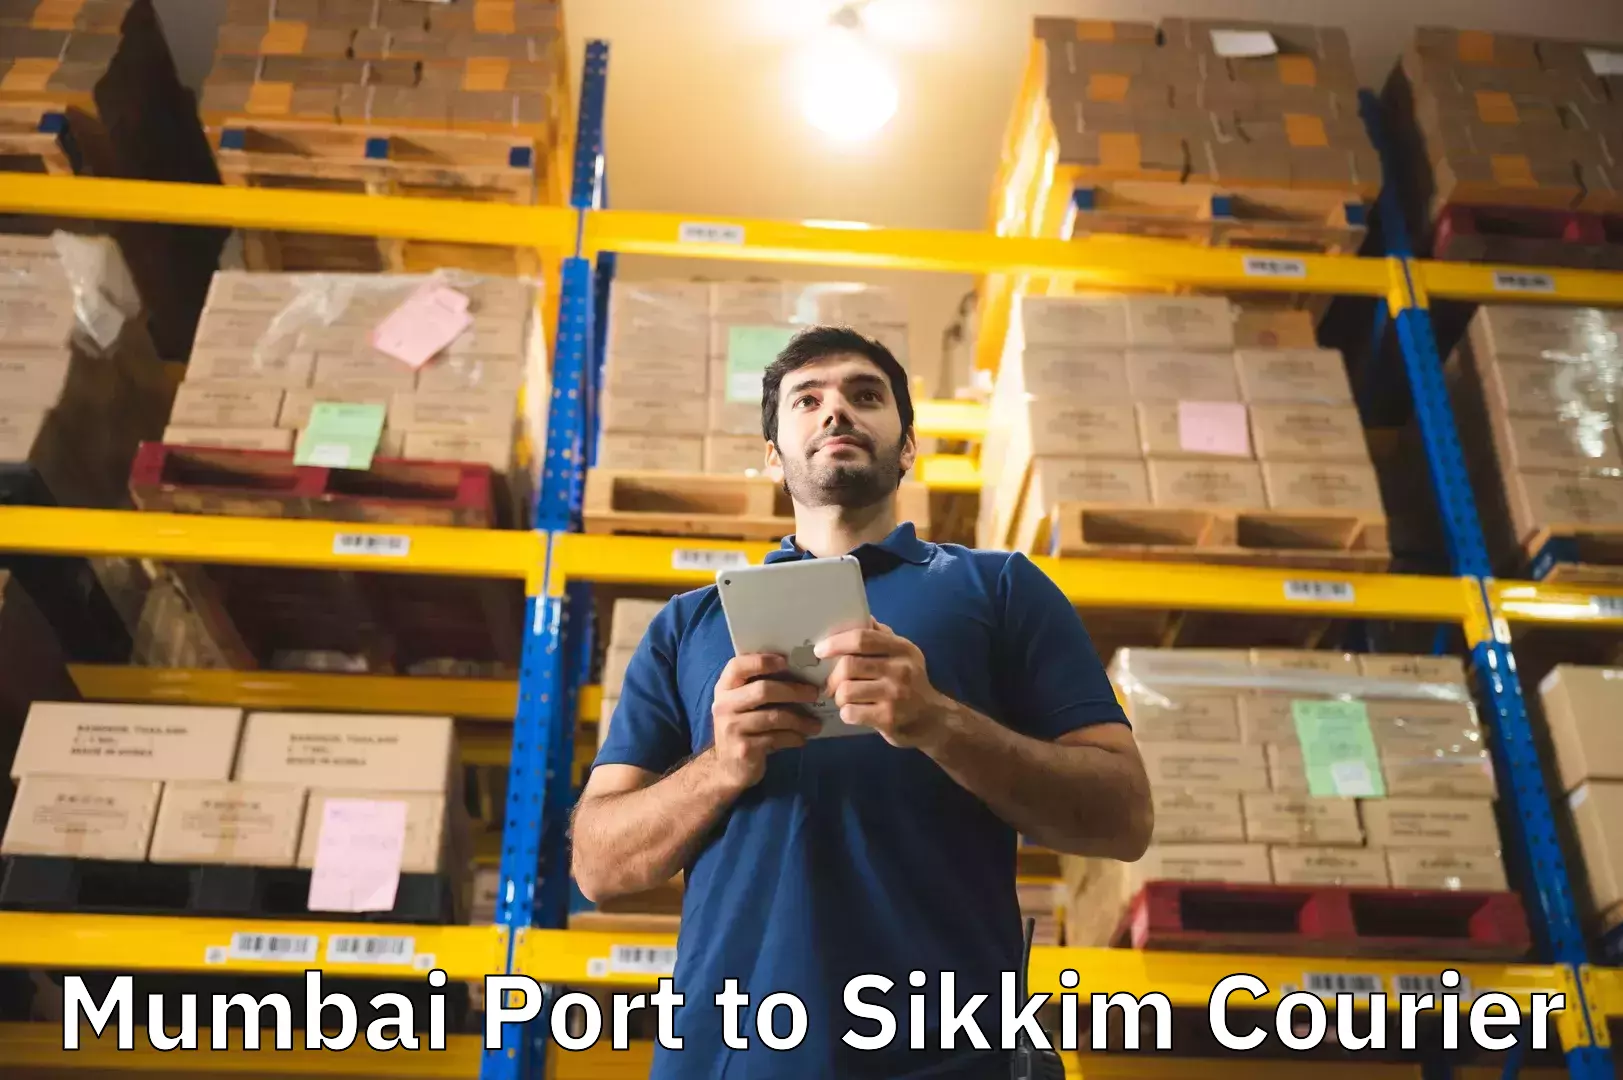 Luggage shipping service Mumbai Port to West Sikkim